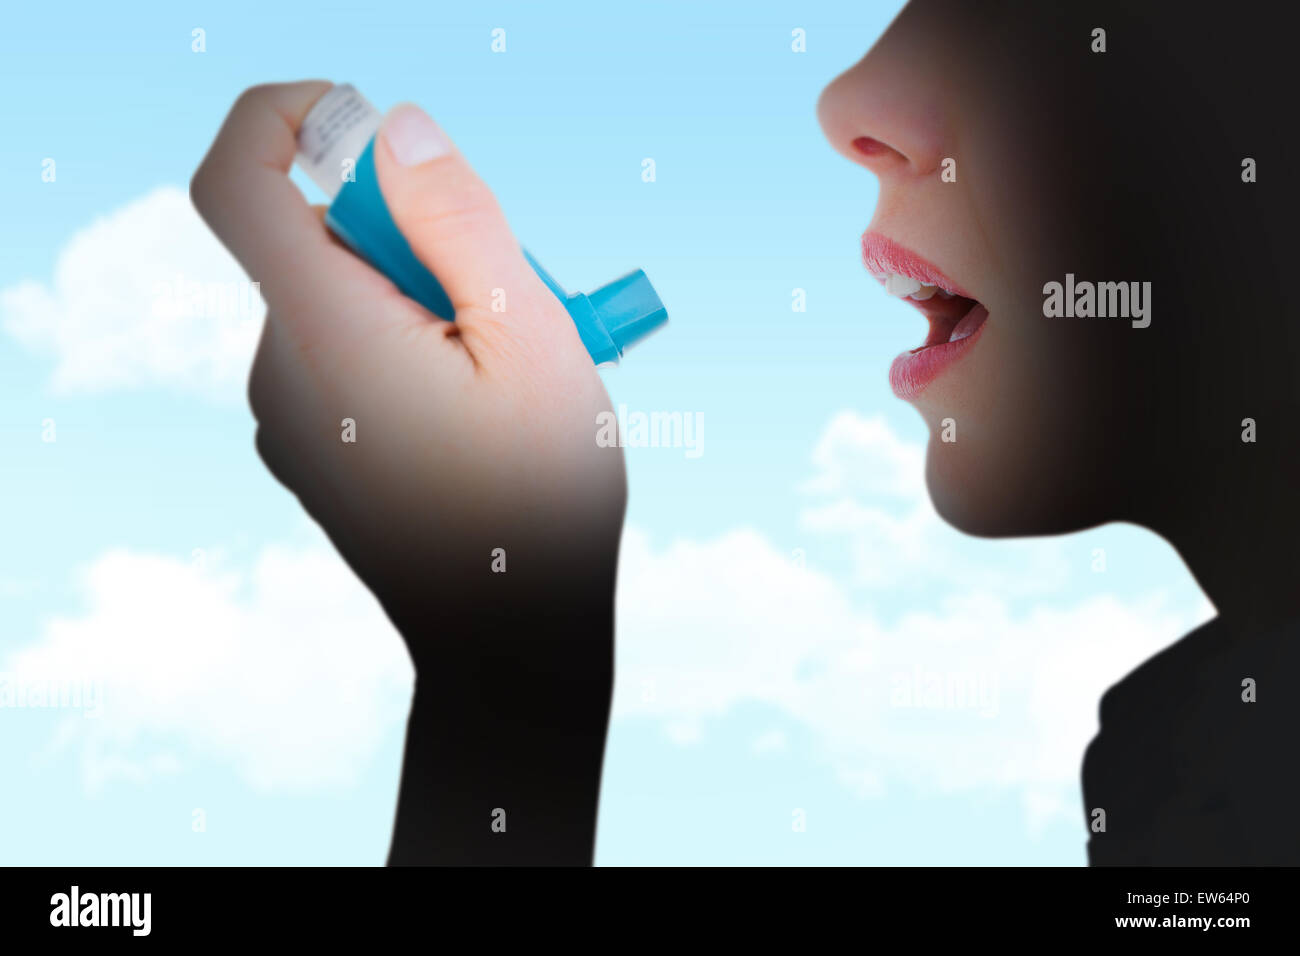 Immagine composita di close up di una donna utilizzando un inalatore per asmatici Foto Stock